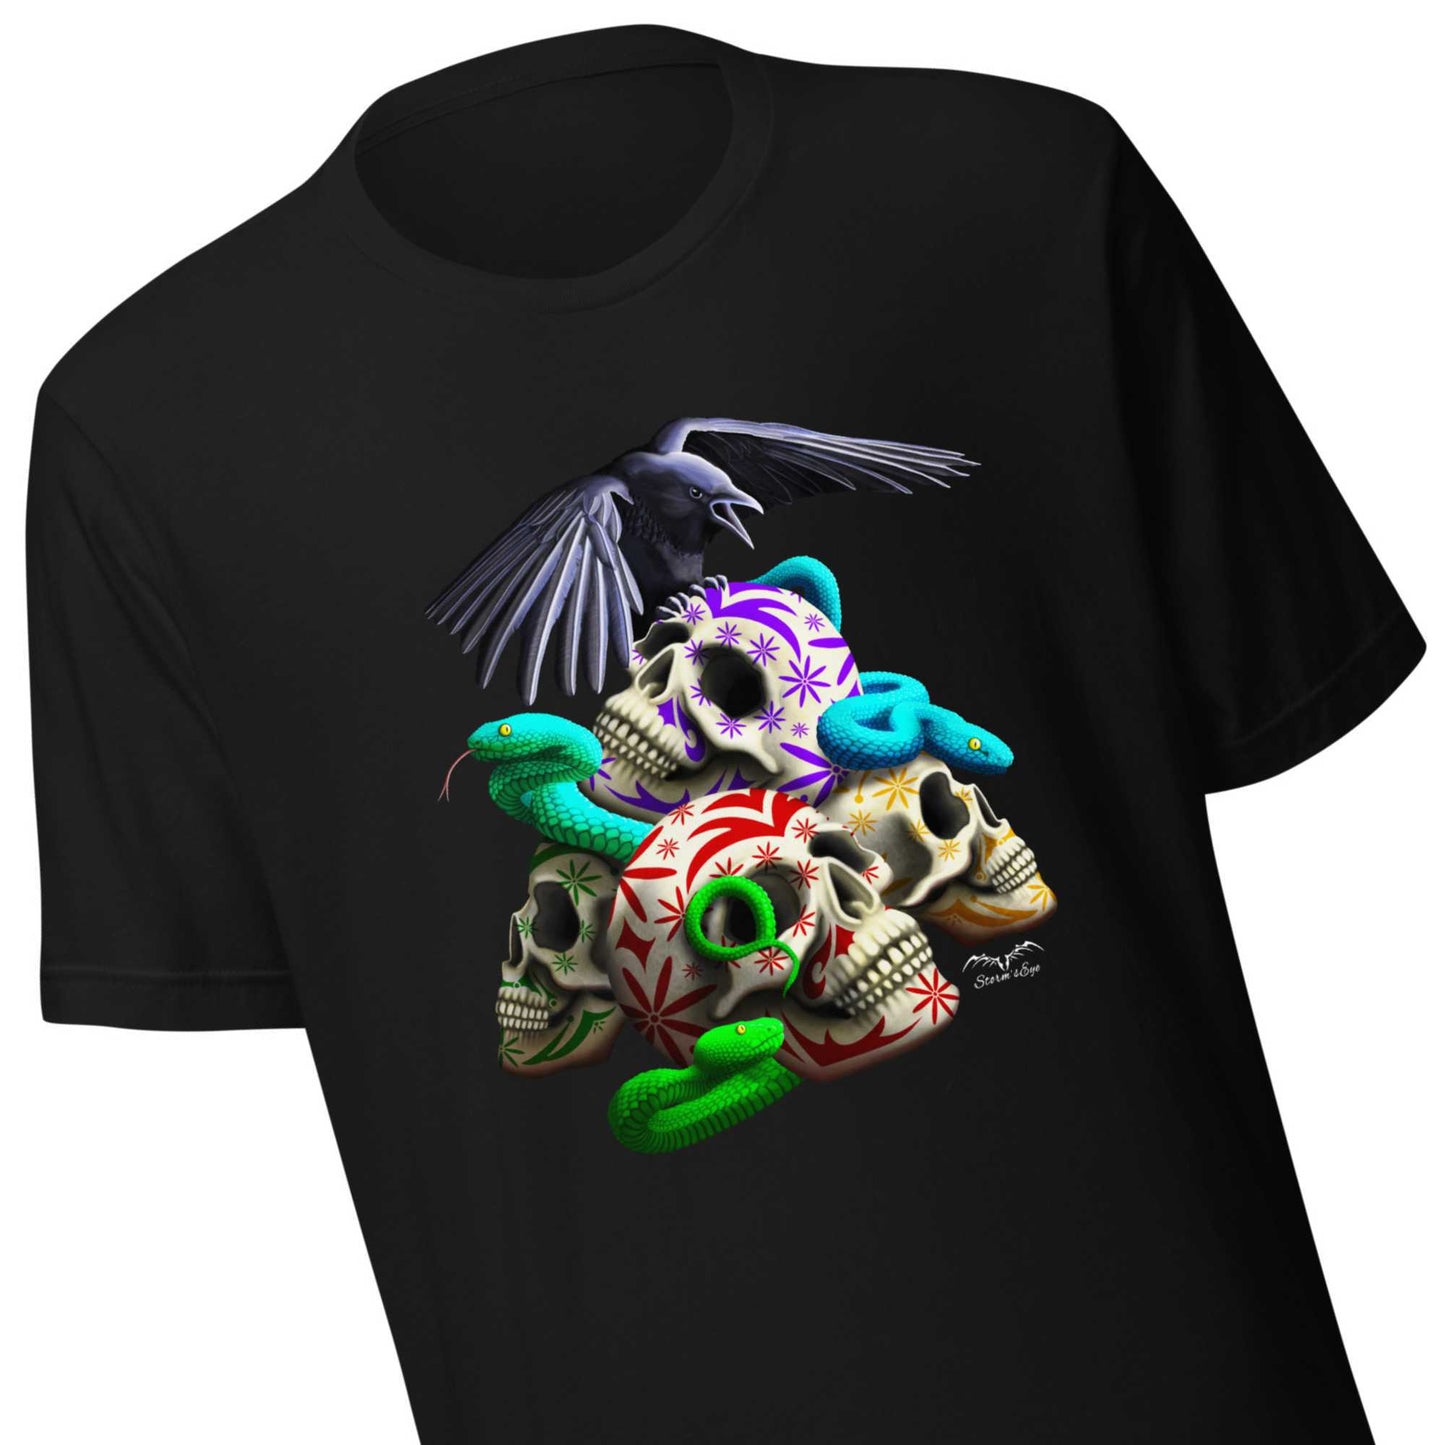 Sugar Skulls And Snakes T-Shirt – Weiches Halloween-Horror-Shirt im Gothic-Rocker-Stil